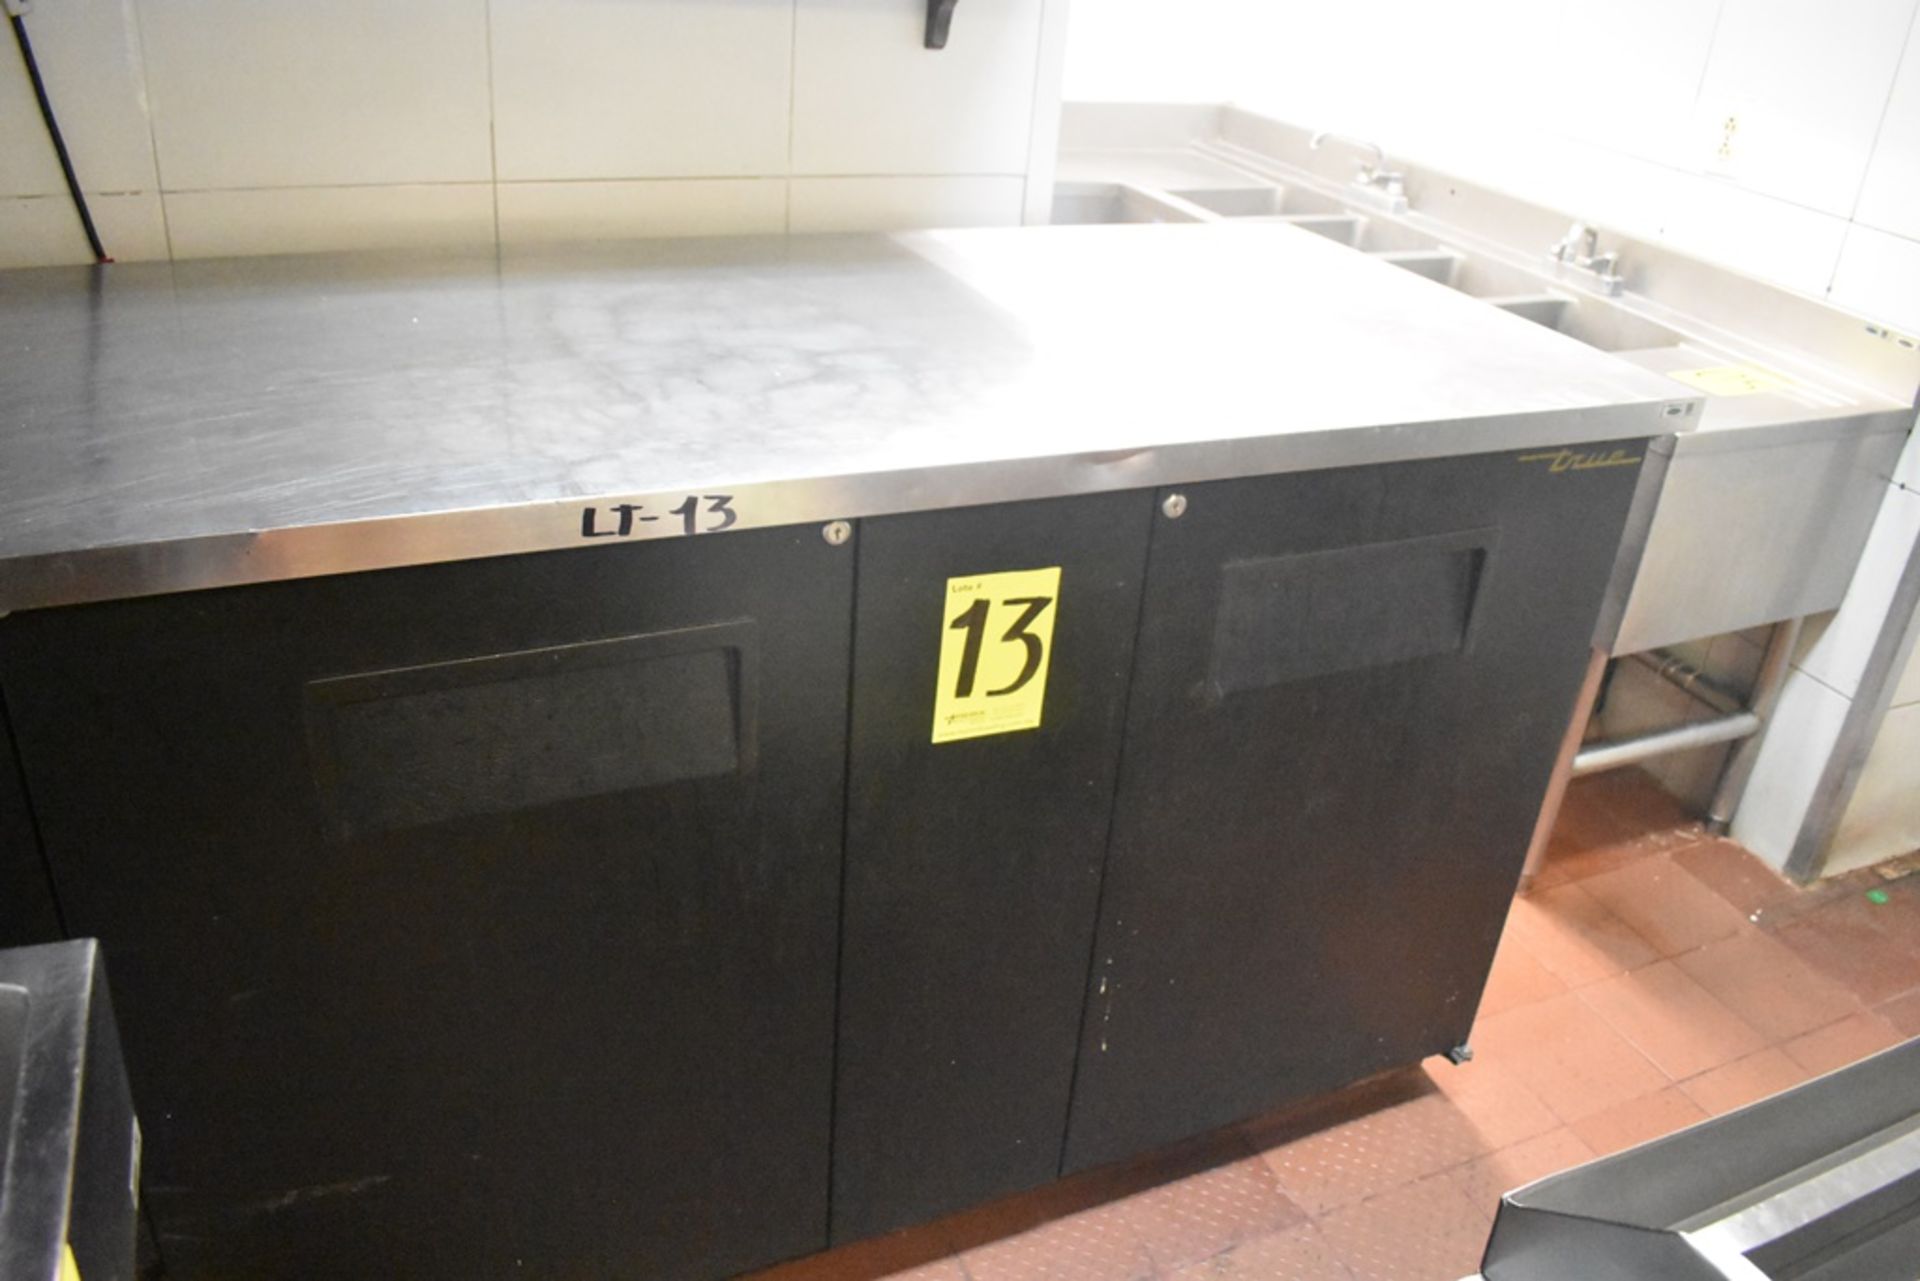 Mesa de trabajo refrigerada con cubierta en acero inoxidable marca True, modelo TBB-3, número de se - Image 10 of 20